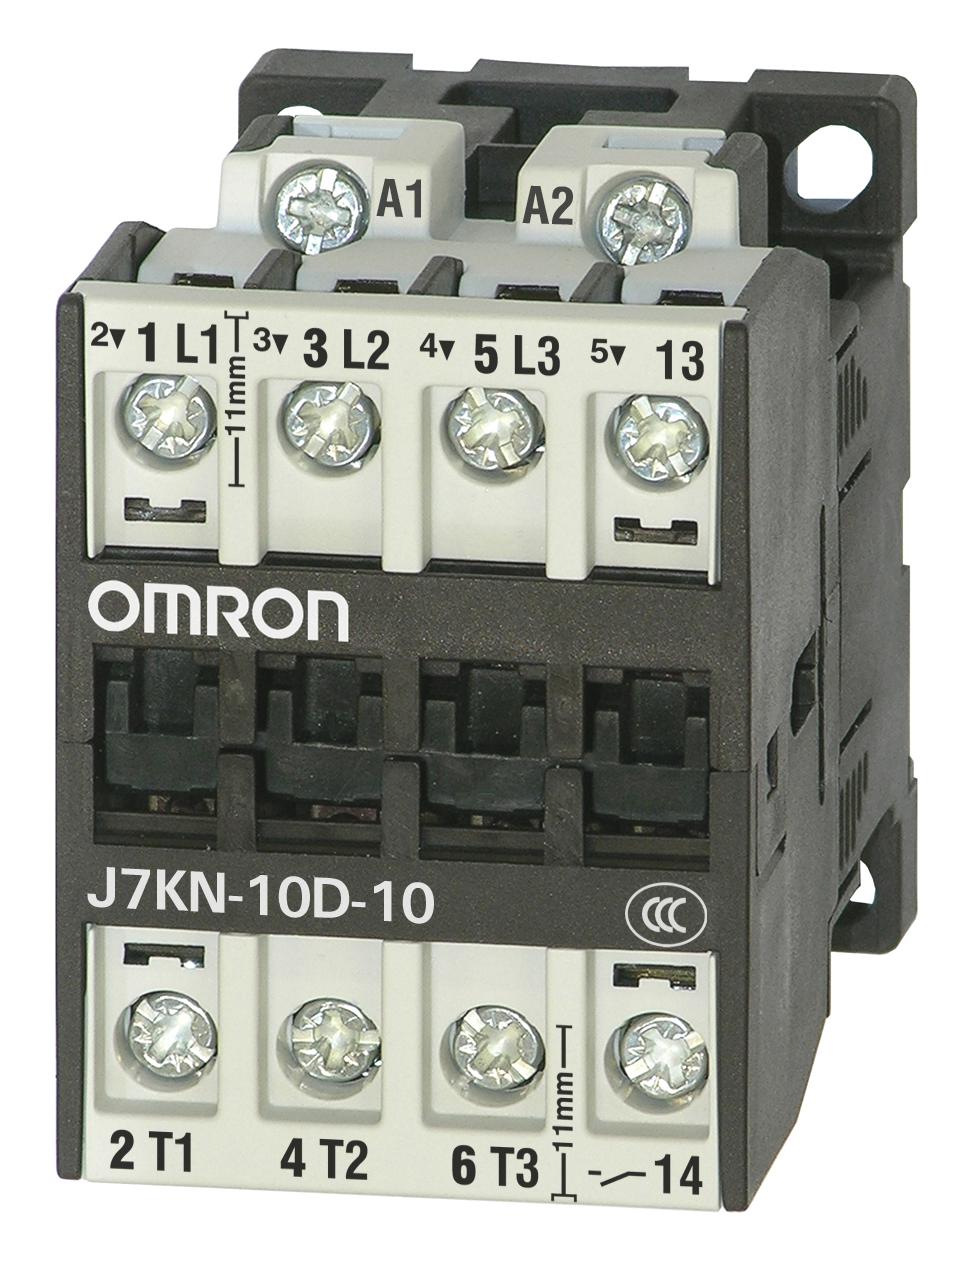 J7KN-10D-10 110 CONTACTORS RELAYS OMRON